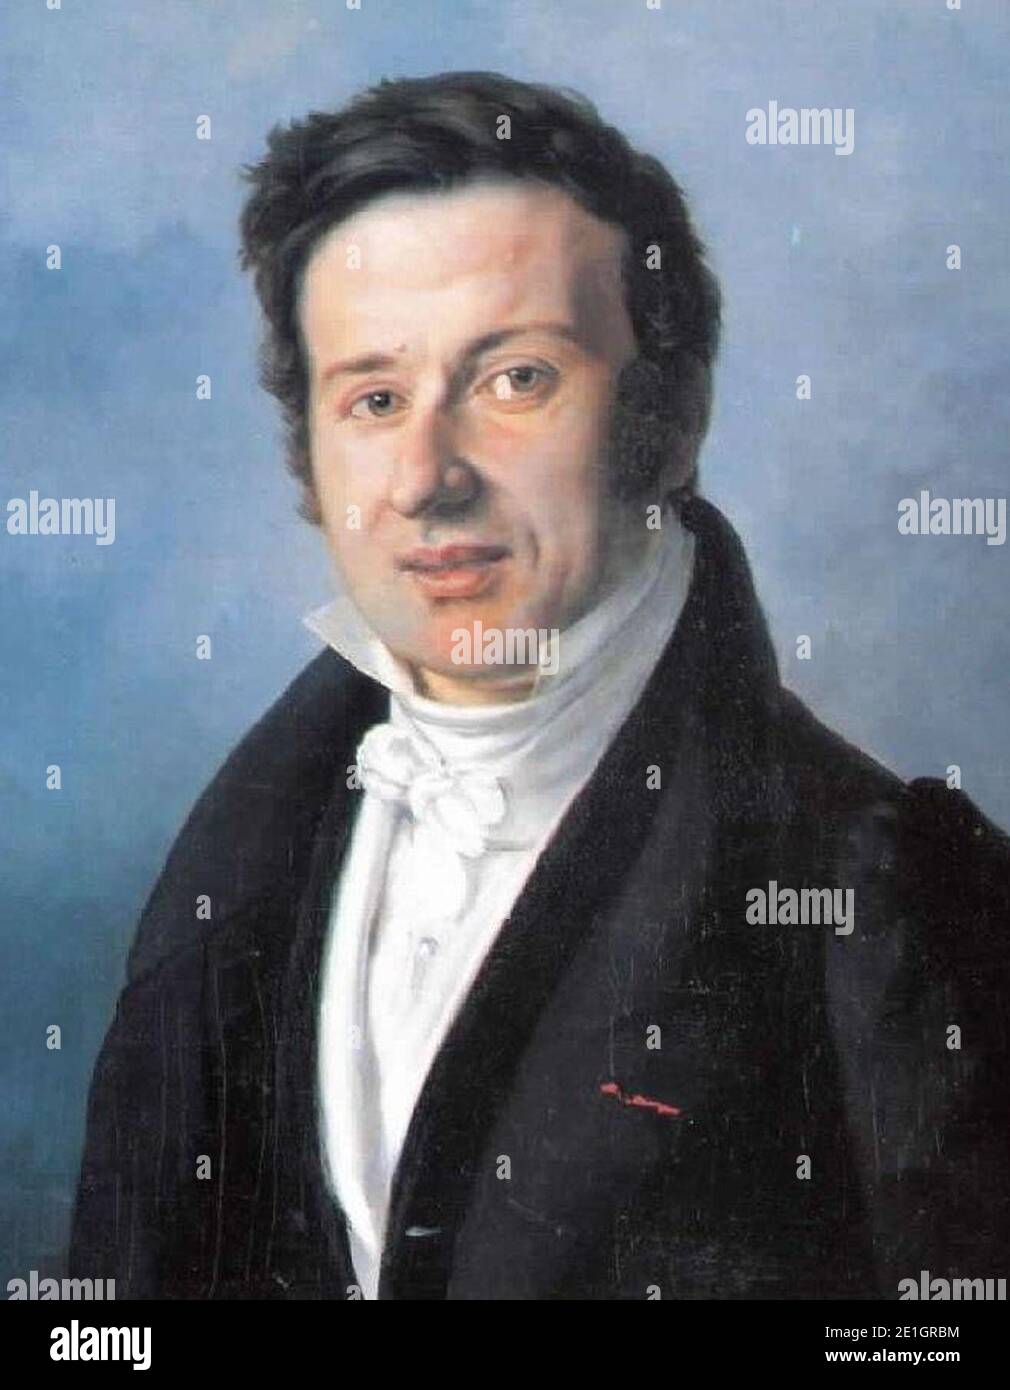 Louis Charles Arsenne - Portrait de René Primevère Lesson (cropped). Stock Photo